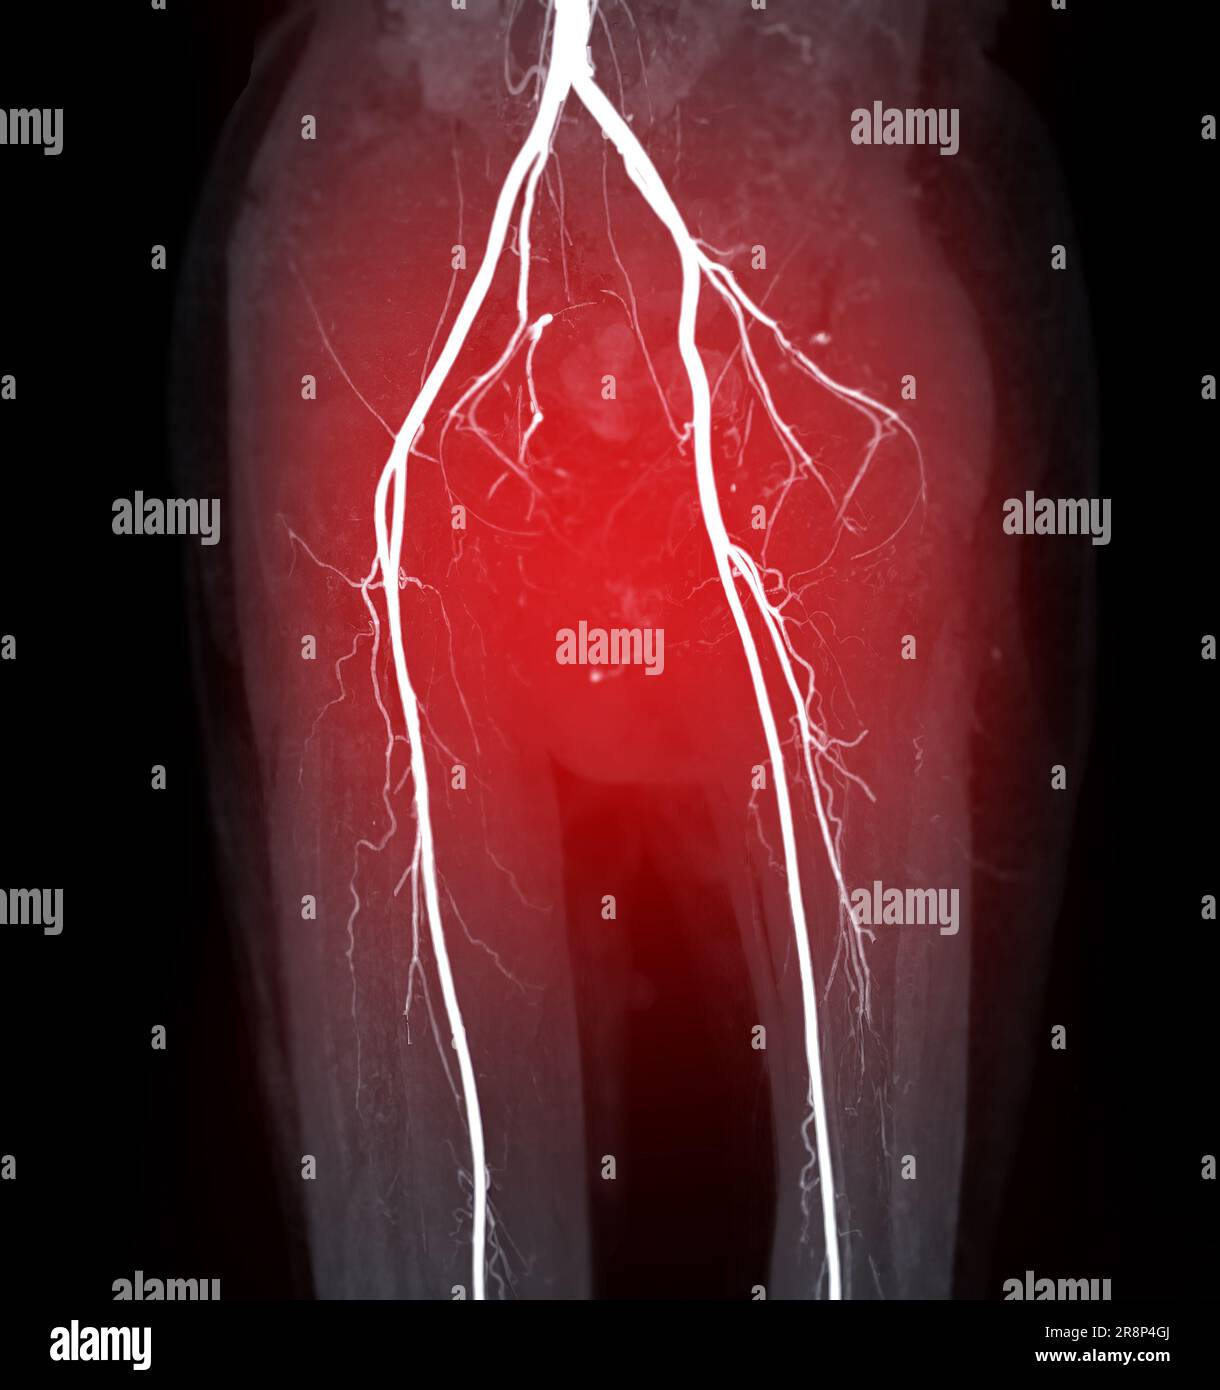 Image de l'artère fémorale CTA de l'artère fémorale pour diagnostic de maladie artérielle périphérique aiguë ou chronique. Banque D'Images